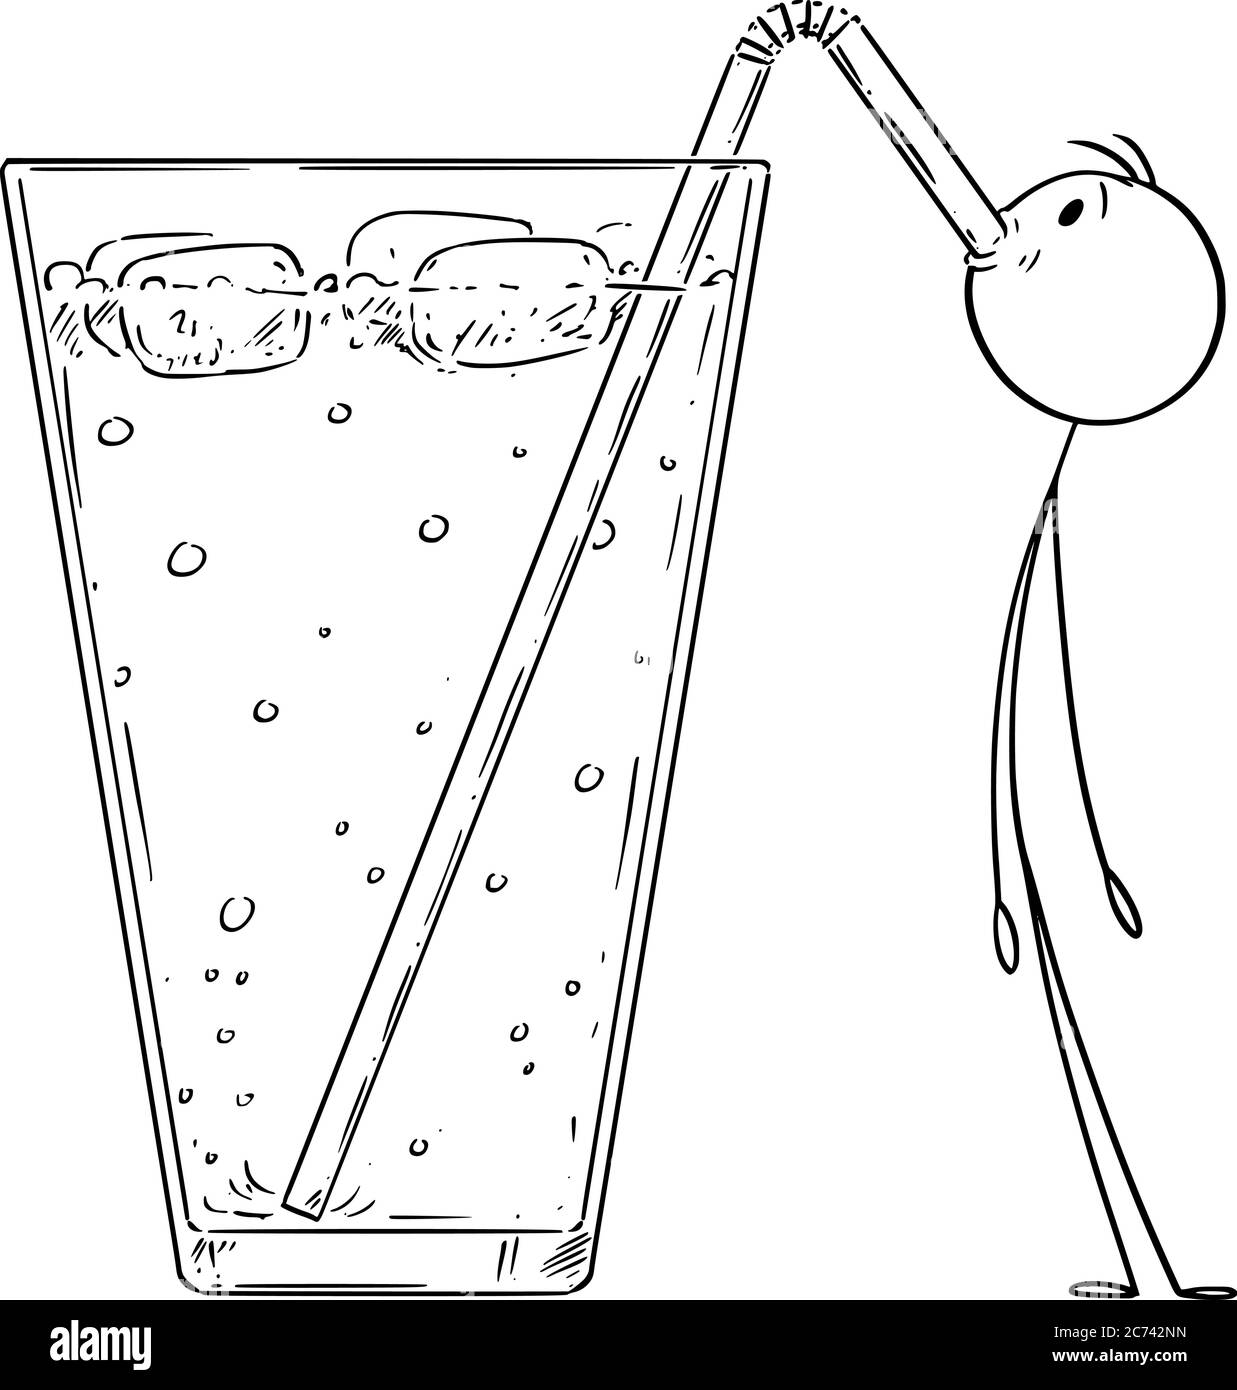 Figura del cartone vettoriale disegno illustrazione concettuale del piccolo uomo che beve limonata fredda, cocktail o bevanda con la paglia. Illustrazione Vettoriale